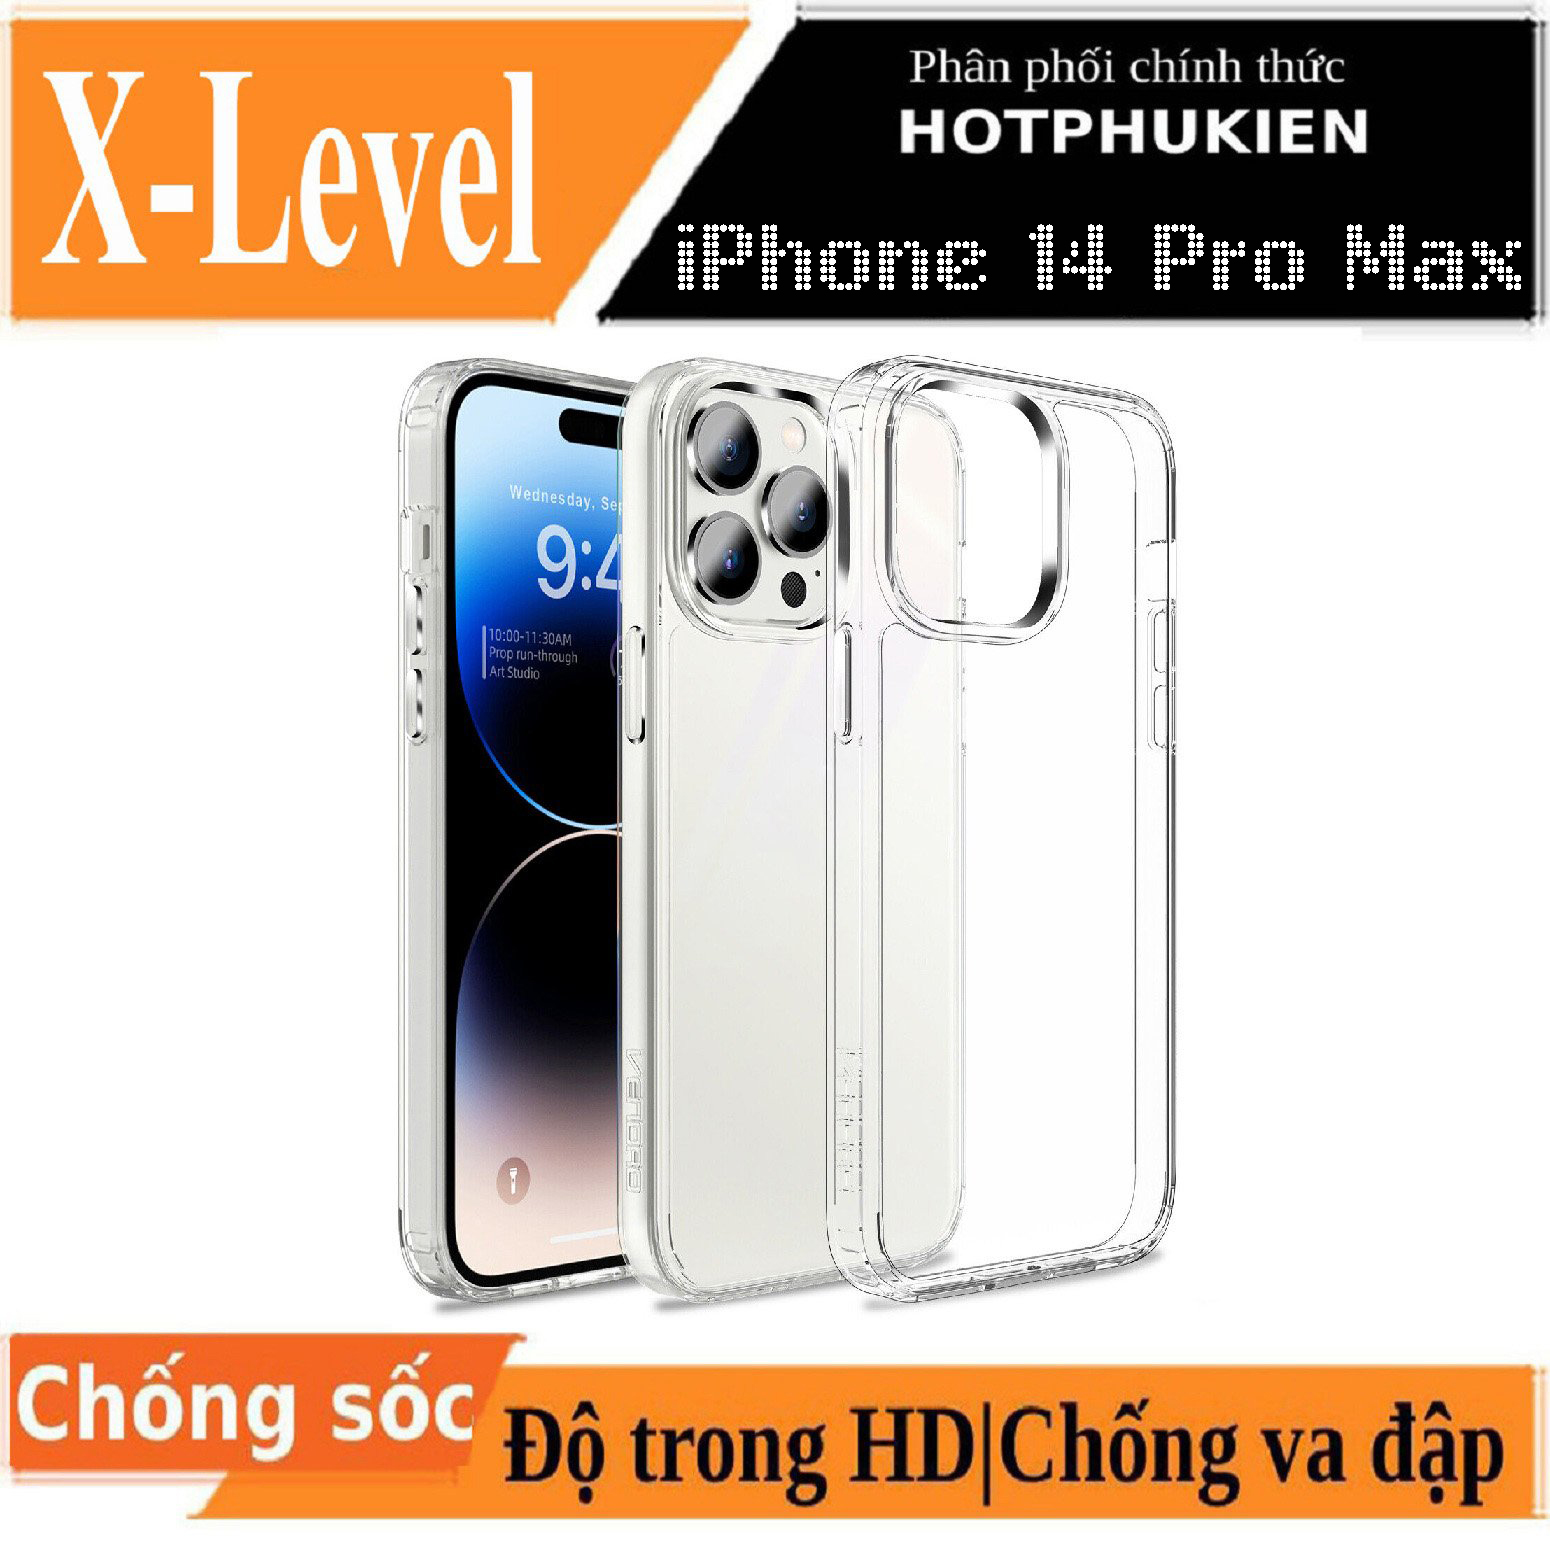 Ốp lưng chống sốc cho iPhone 14 / 14 Plus / 14 Pro / 14 Pro Max mặt lưng trong suốt siêu mỏng 0.88mm hiệu X-Level Sparkling Series độ trong tuyệt đối, chống trầy xước, chống ố vàng, tản nhiệt tốt - hàng nhập khẩu